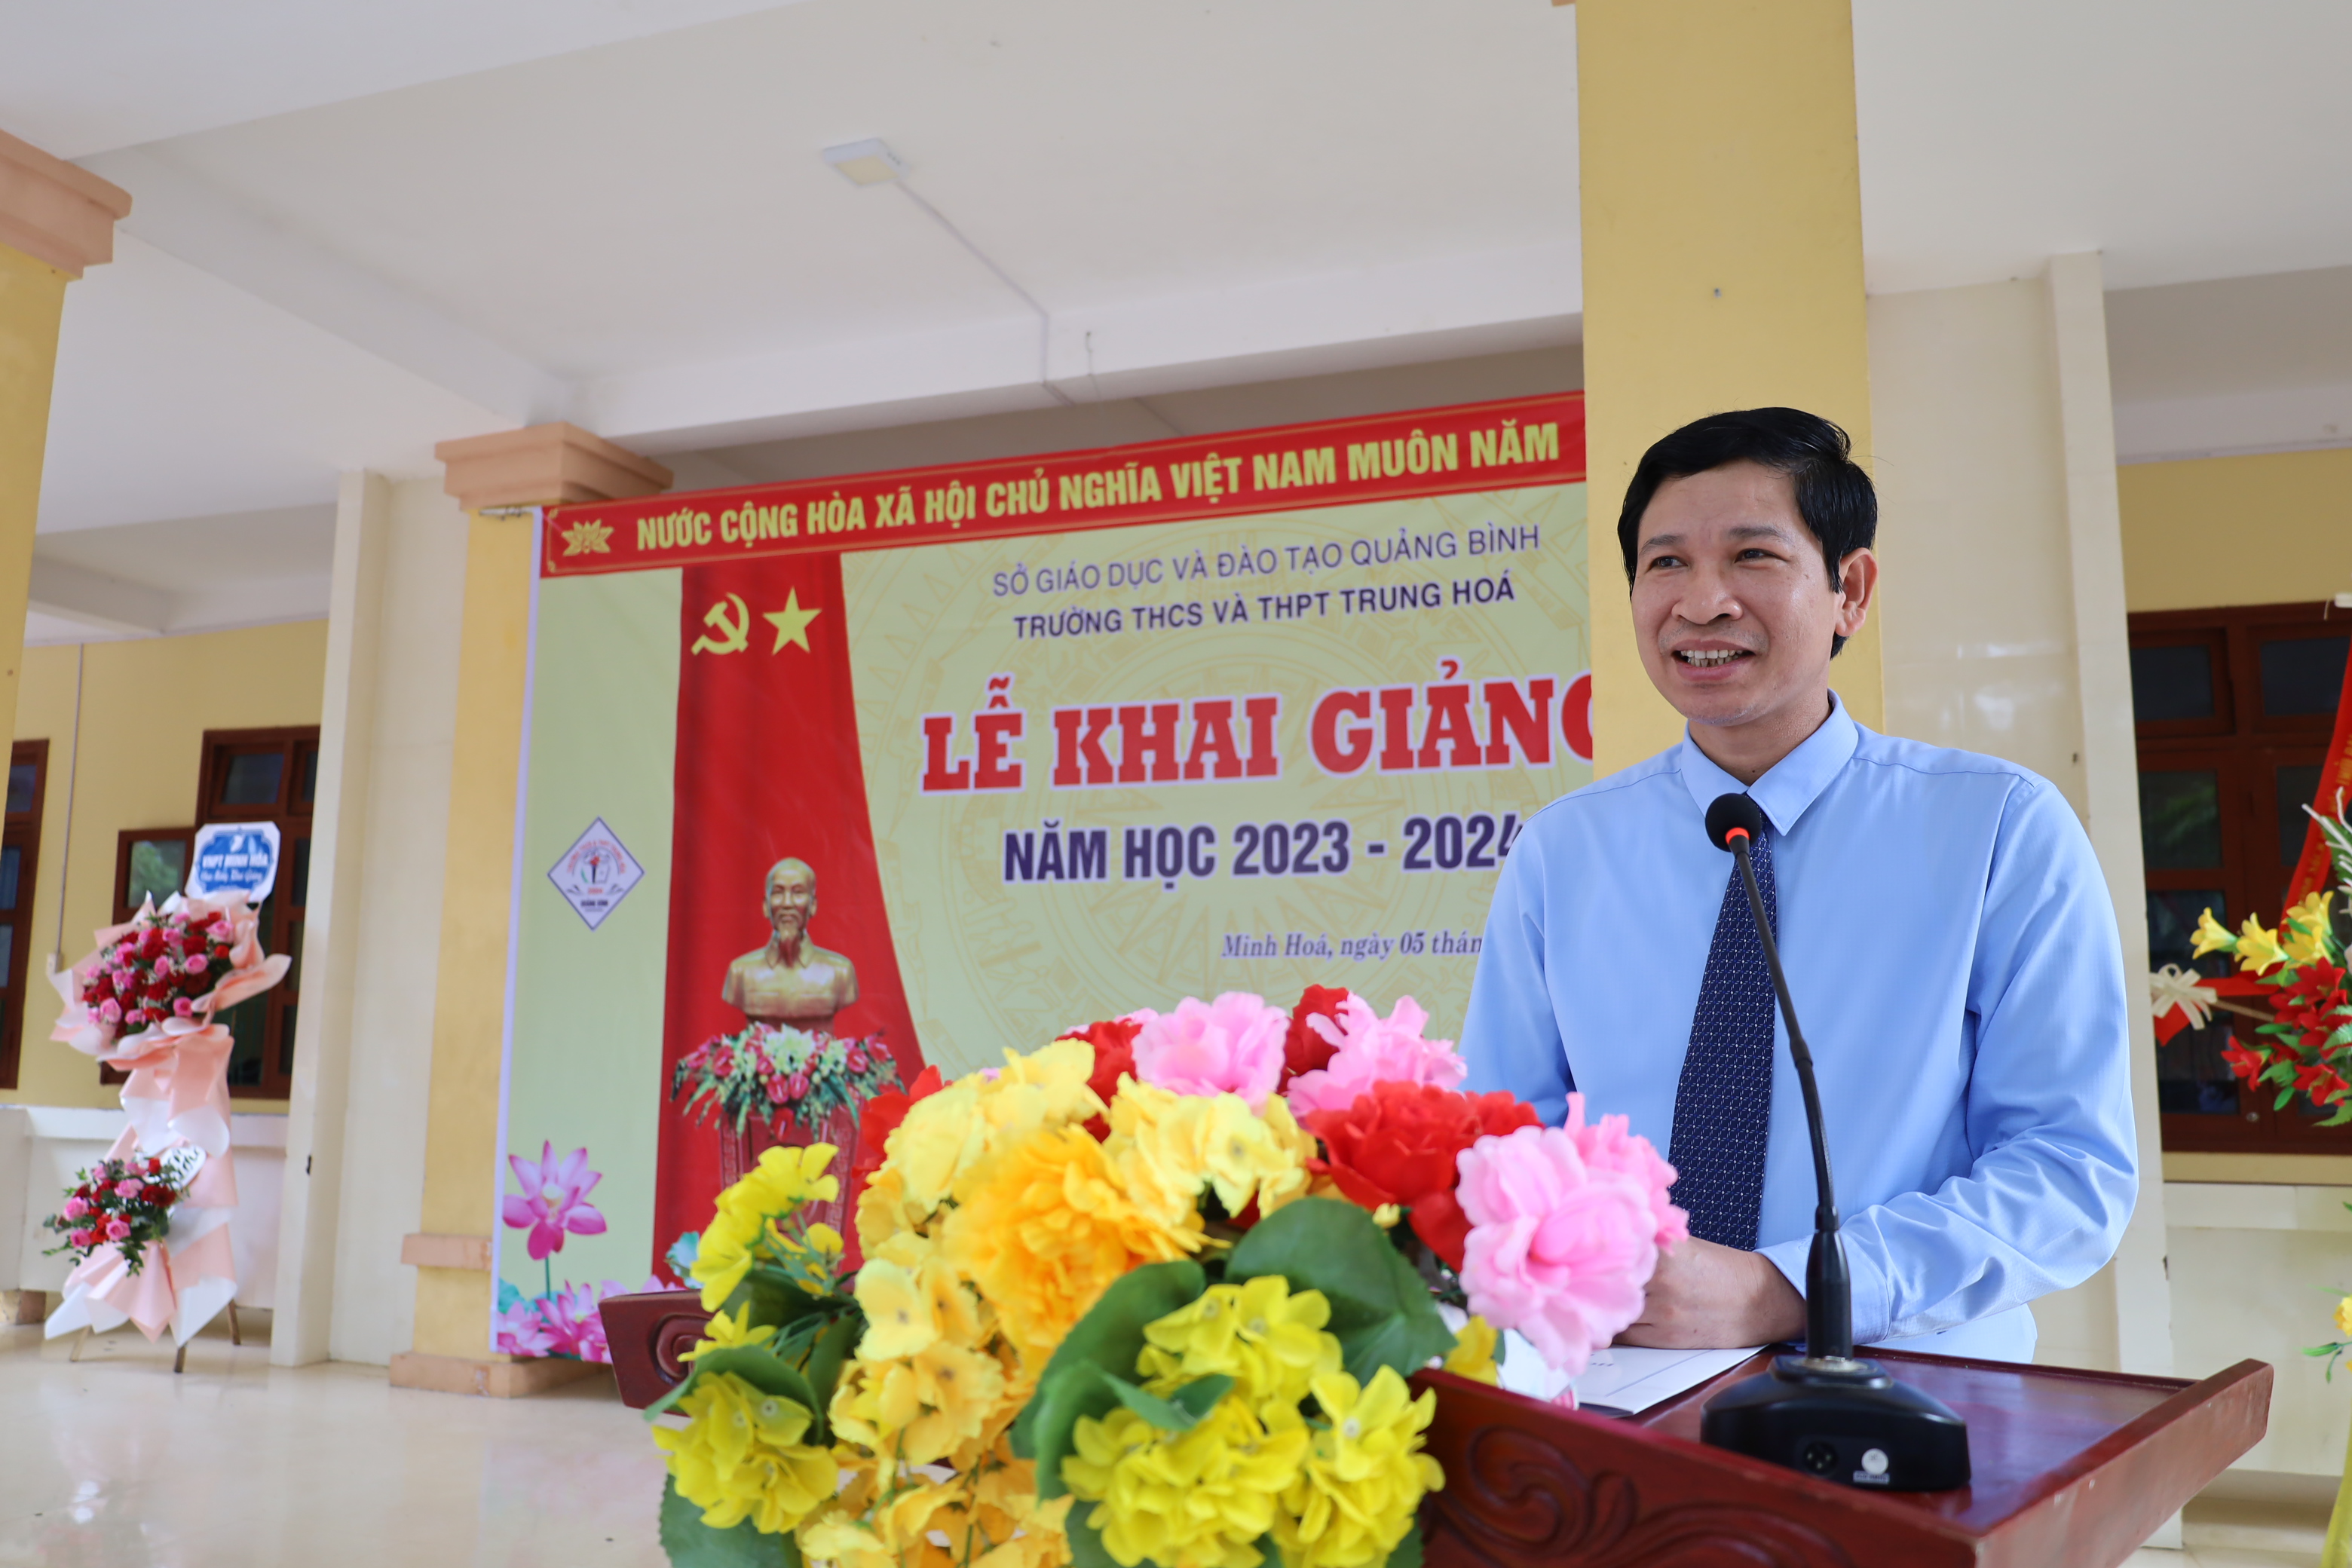 Đồng chí Hồ An Phong, Tỉnh ủy viên, Phó Chủ tịch UBND tỉnh phát biểu tại lễ khai giảng của Trường THCS và THPT Trung Hóa.